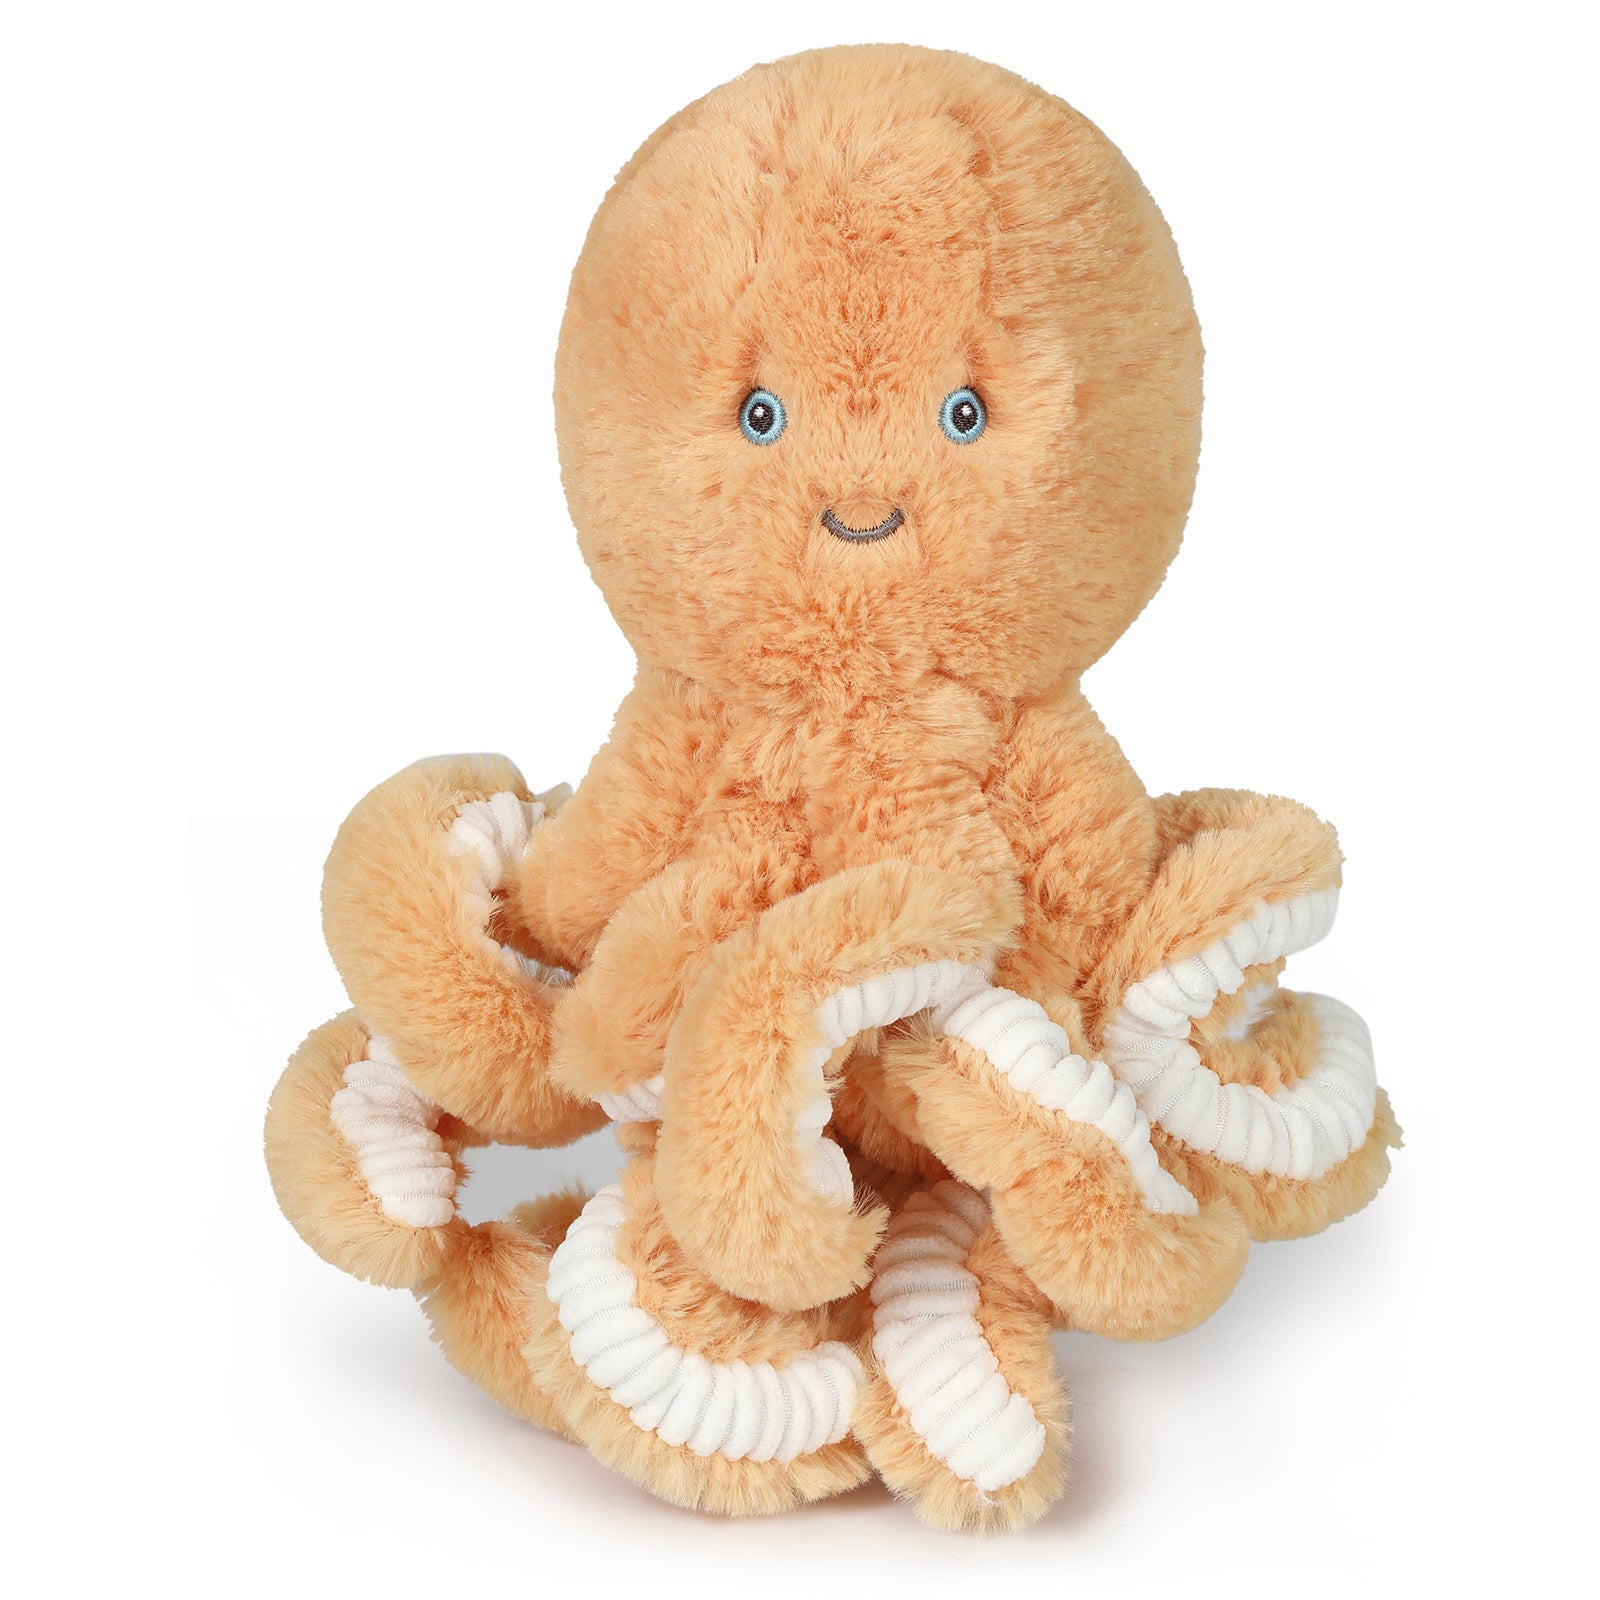 Octopus Soft Toy Australia | Octopus Stuffed Animal | Plush Toys